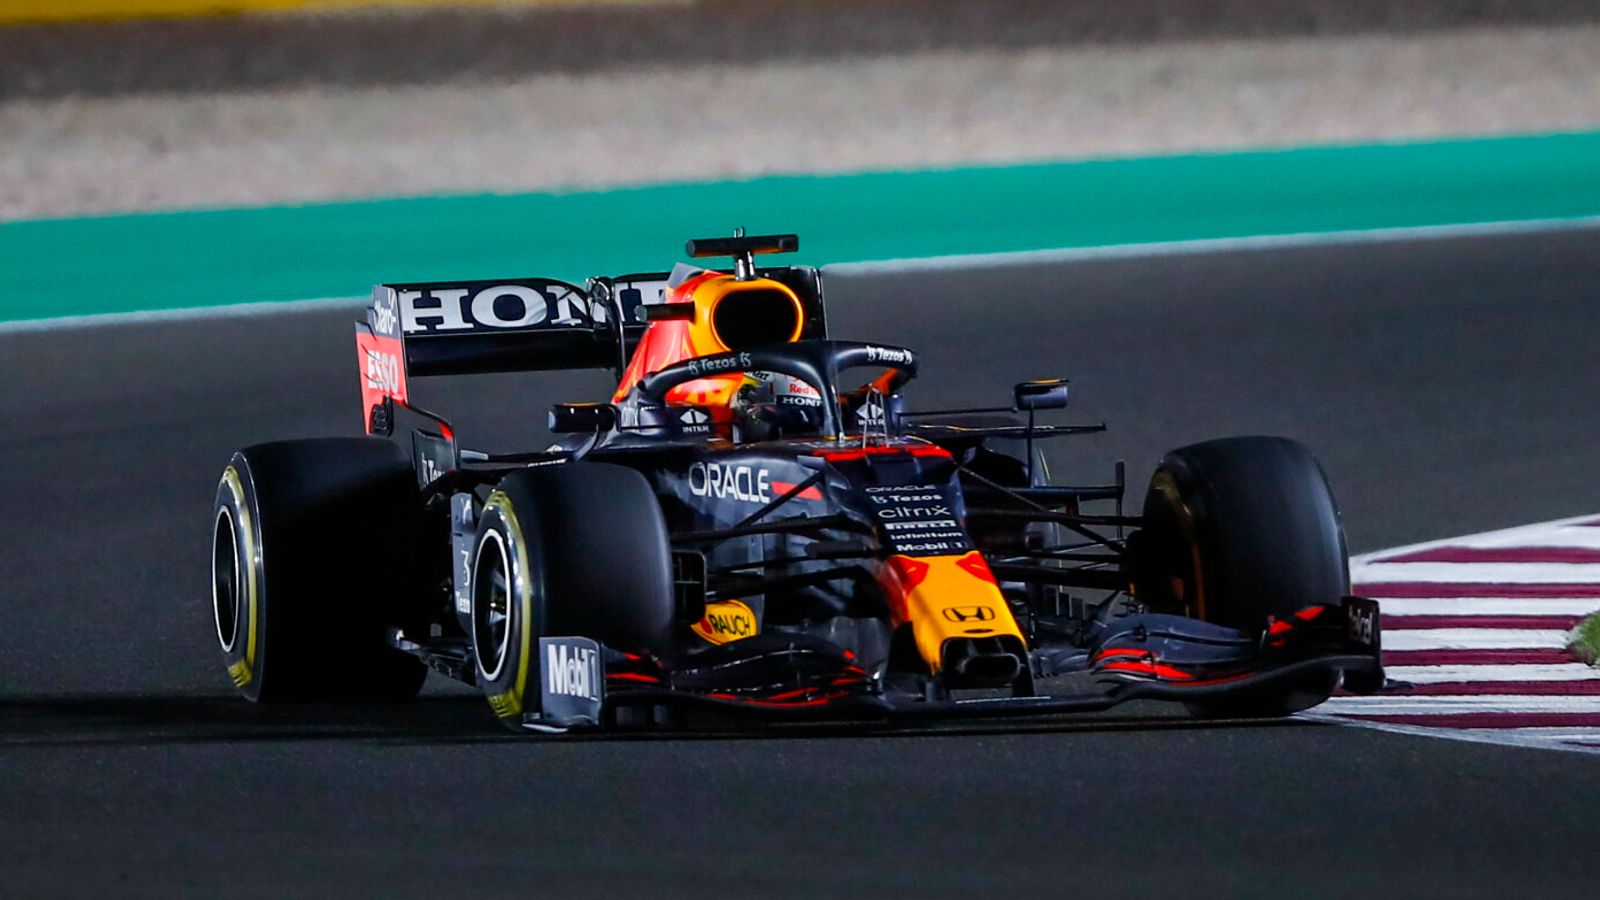 Formel 1 News Bekommt Max Verstappen einen neuen Motor? Formel 1 News Sky Sport